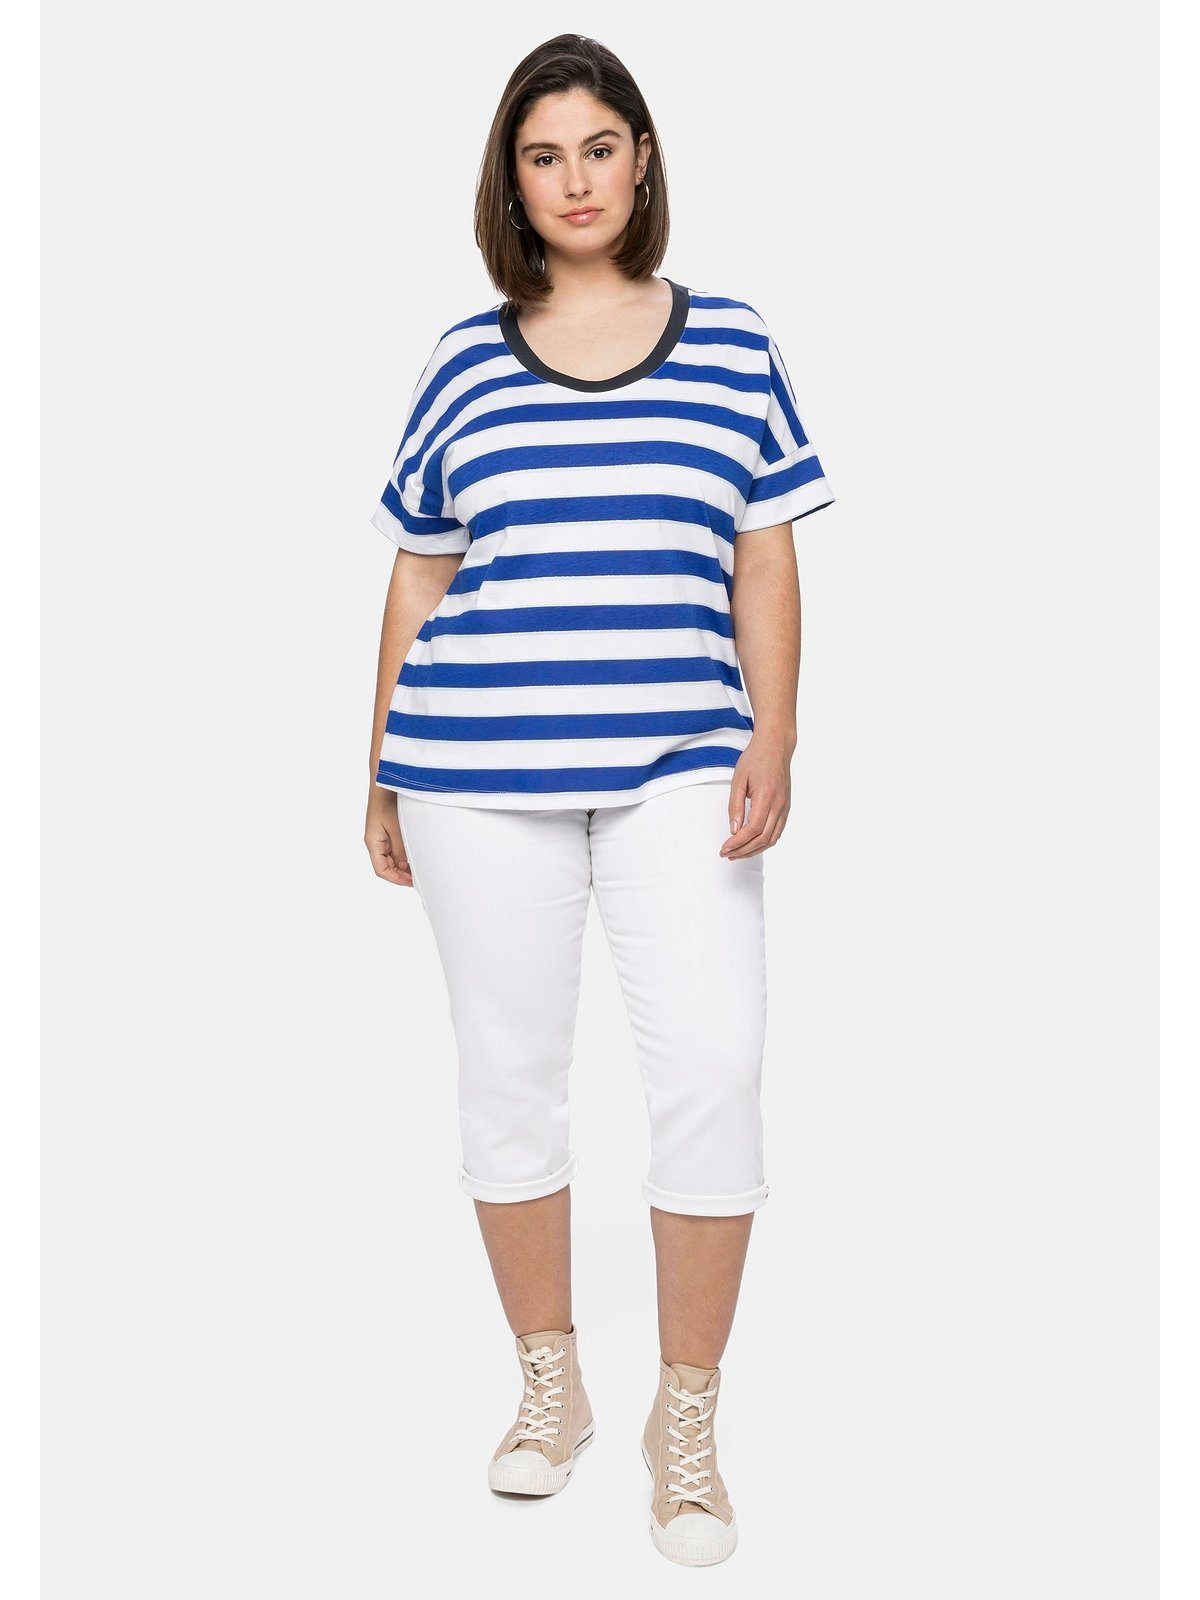 royalblau-weiß Oversize-Form Große mit Glitzergarn, Sheego in T-Shirt Größen